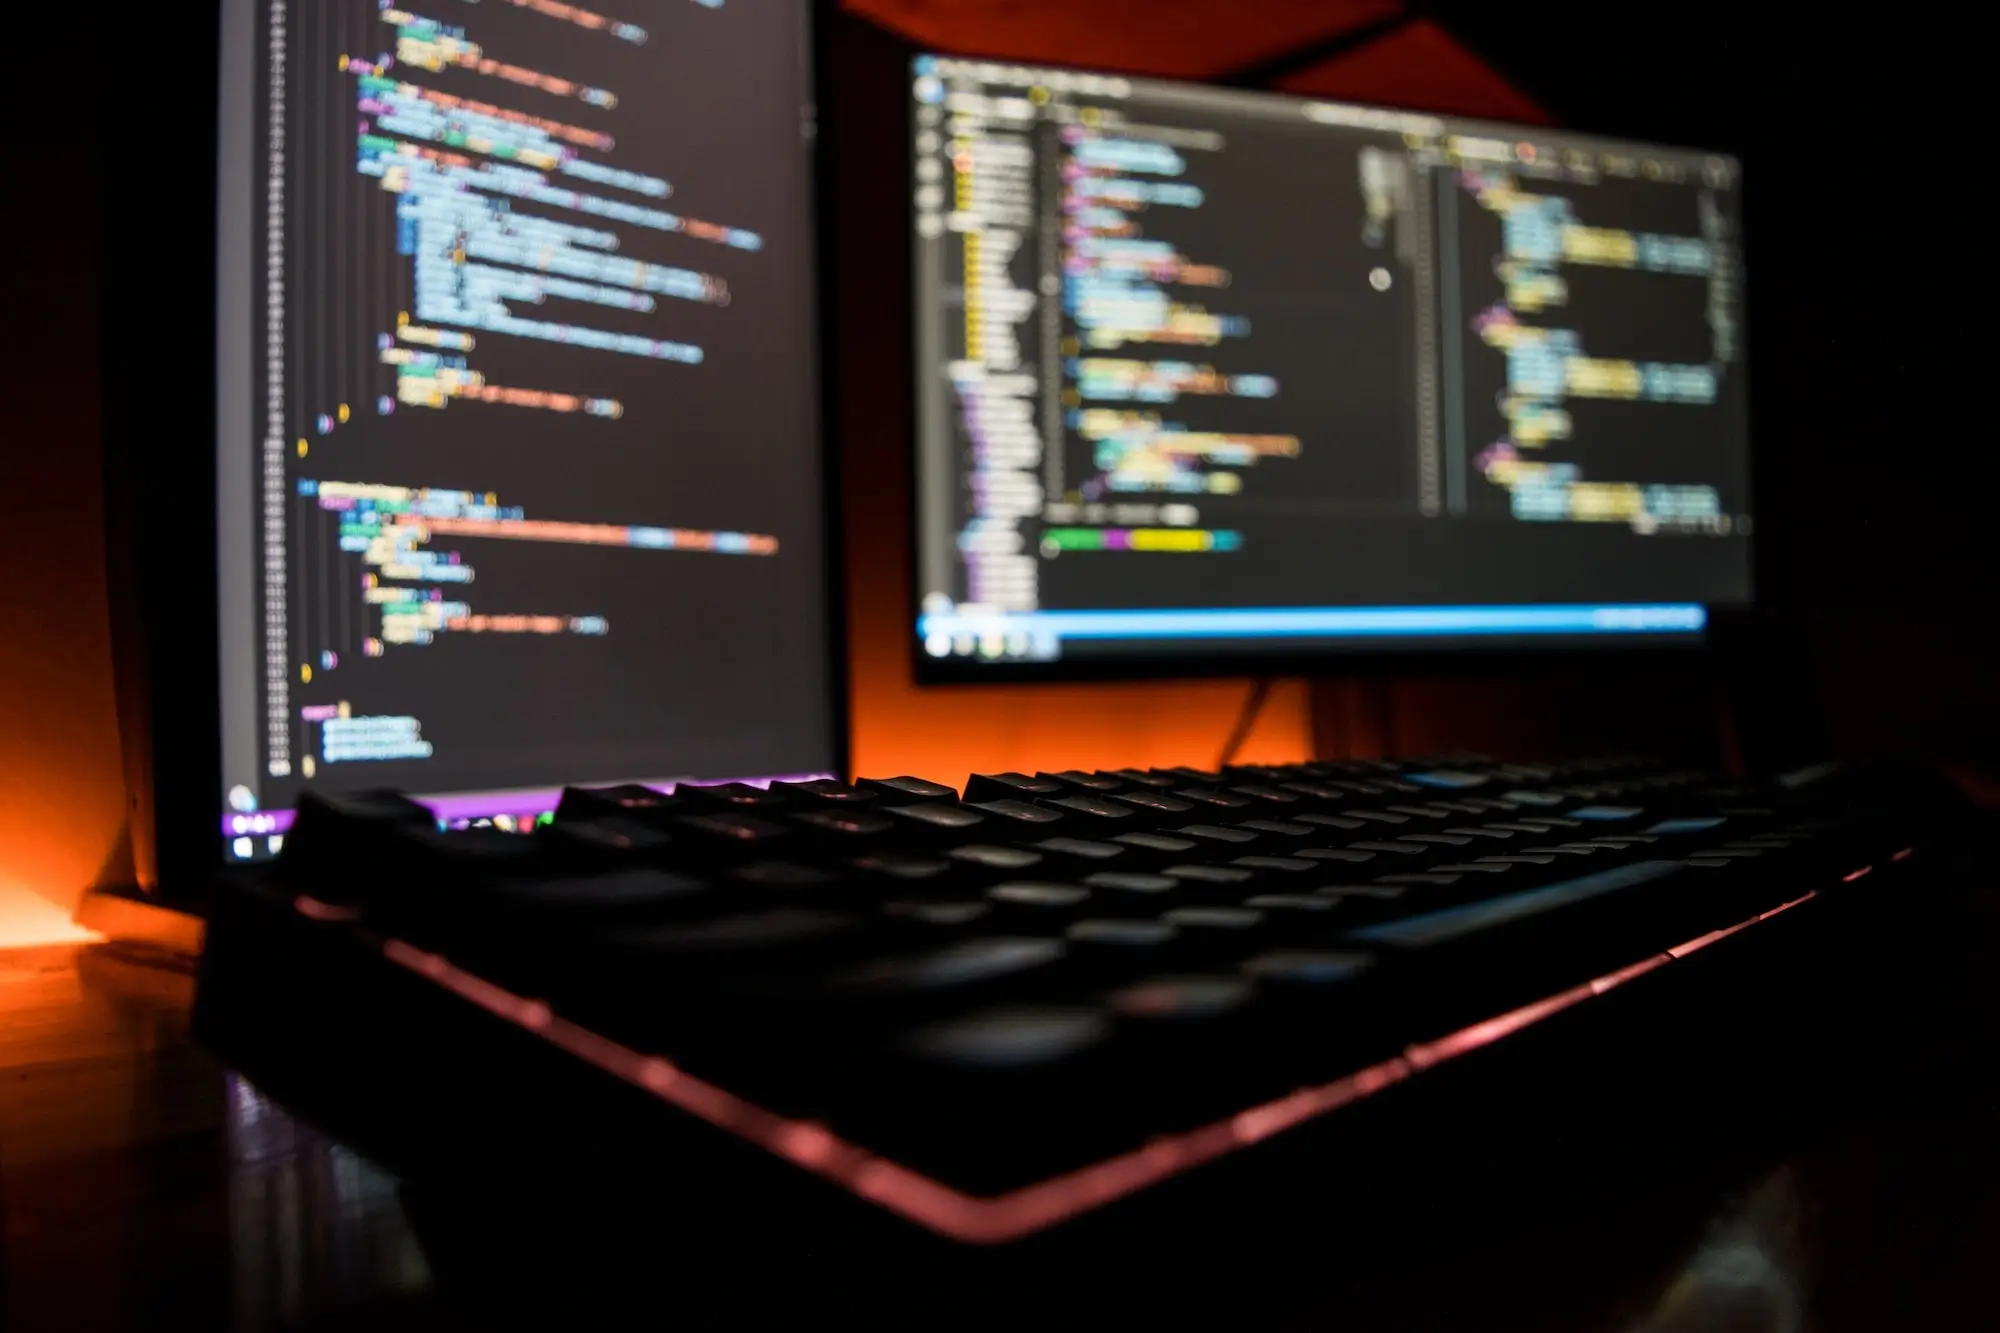 Tastatur und zwei Bildschirme mit Code auf einem Schreibtisch in einem dunklen Raum.